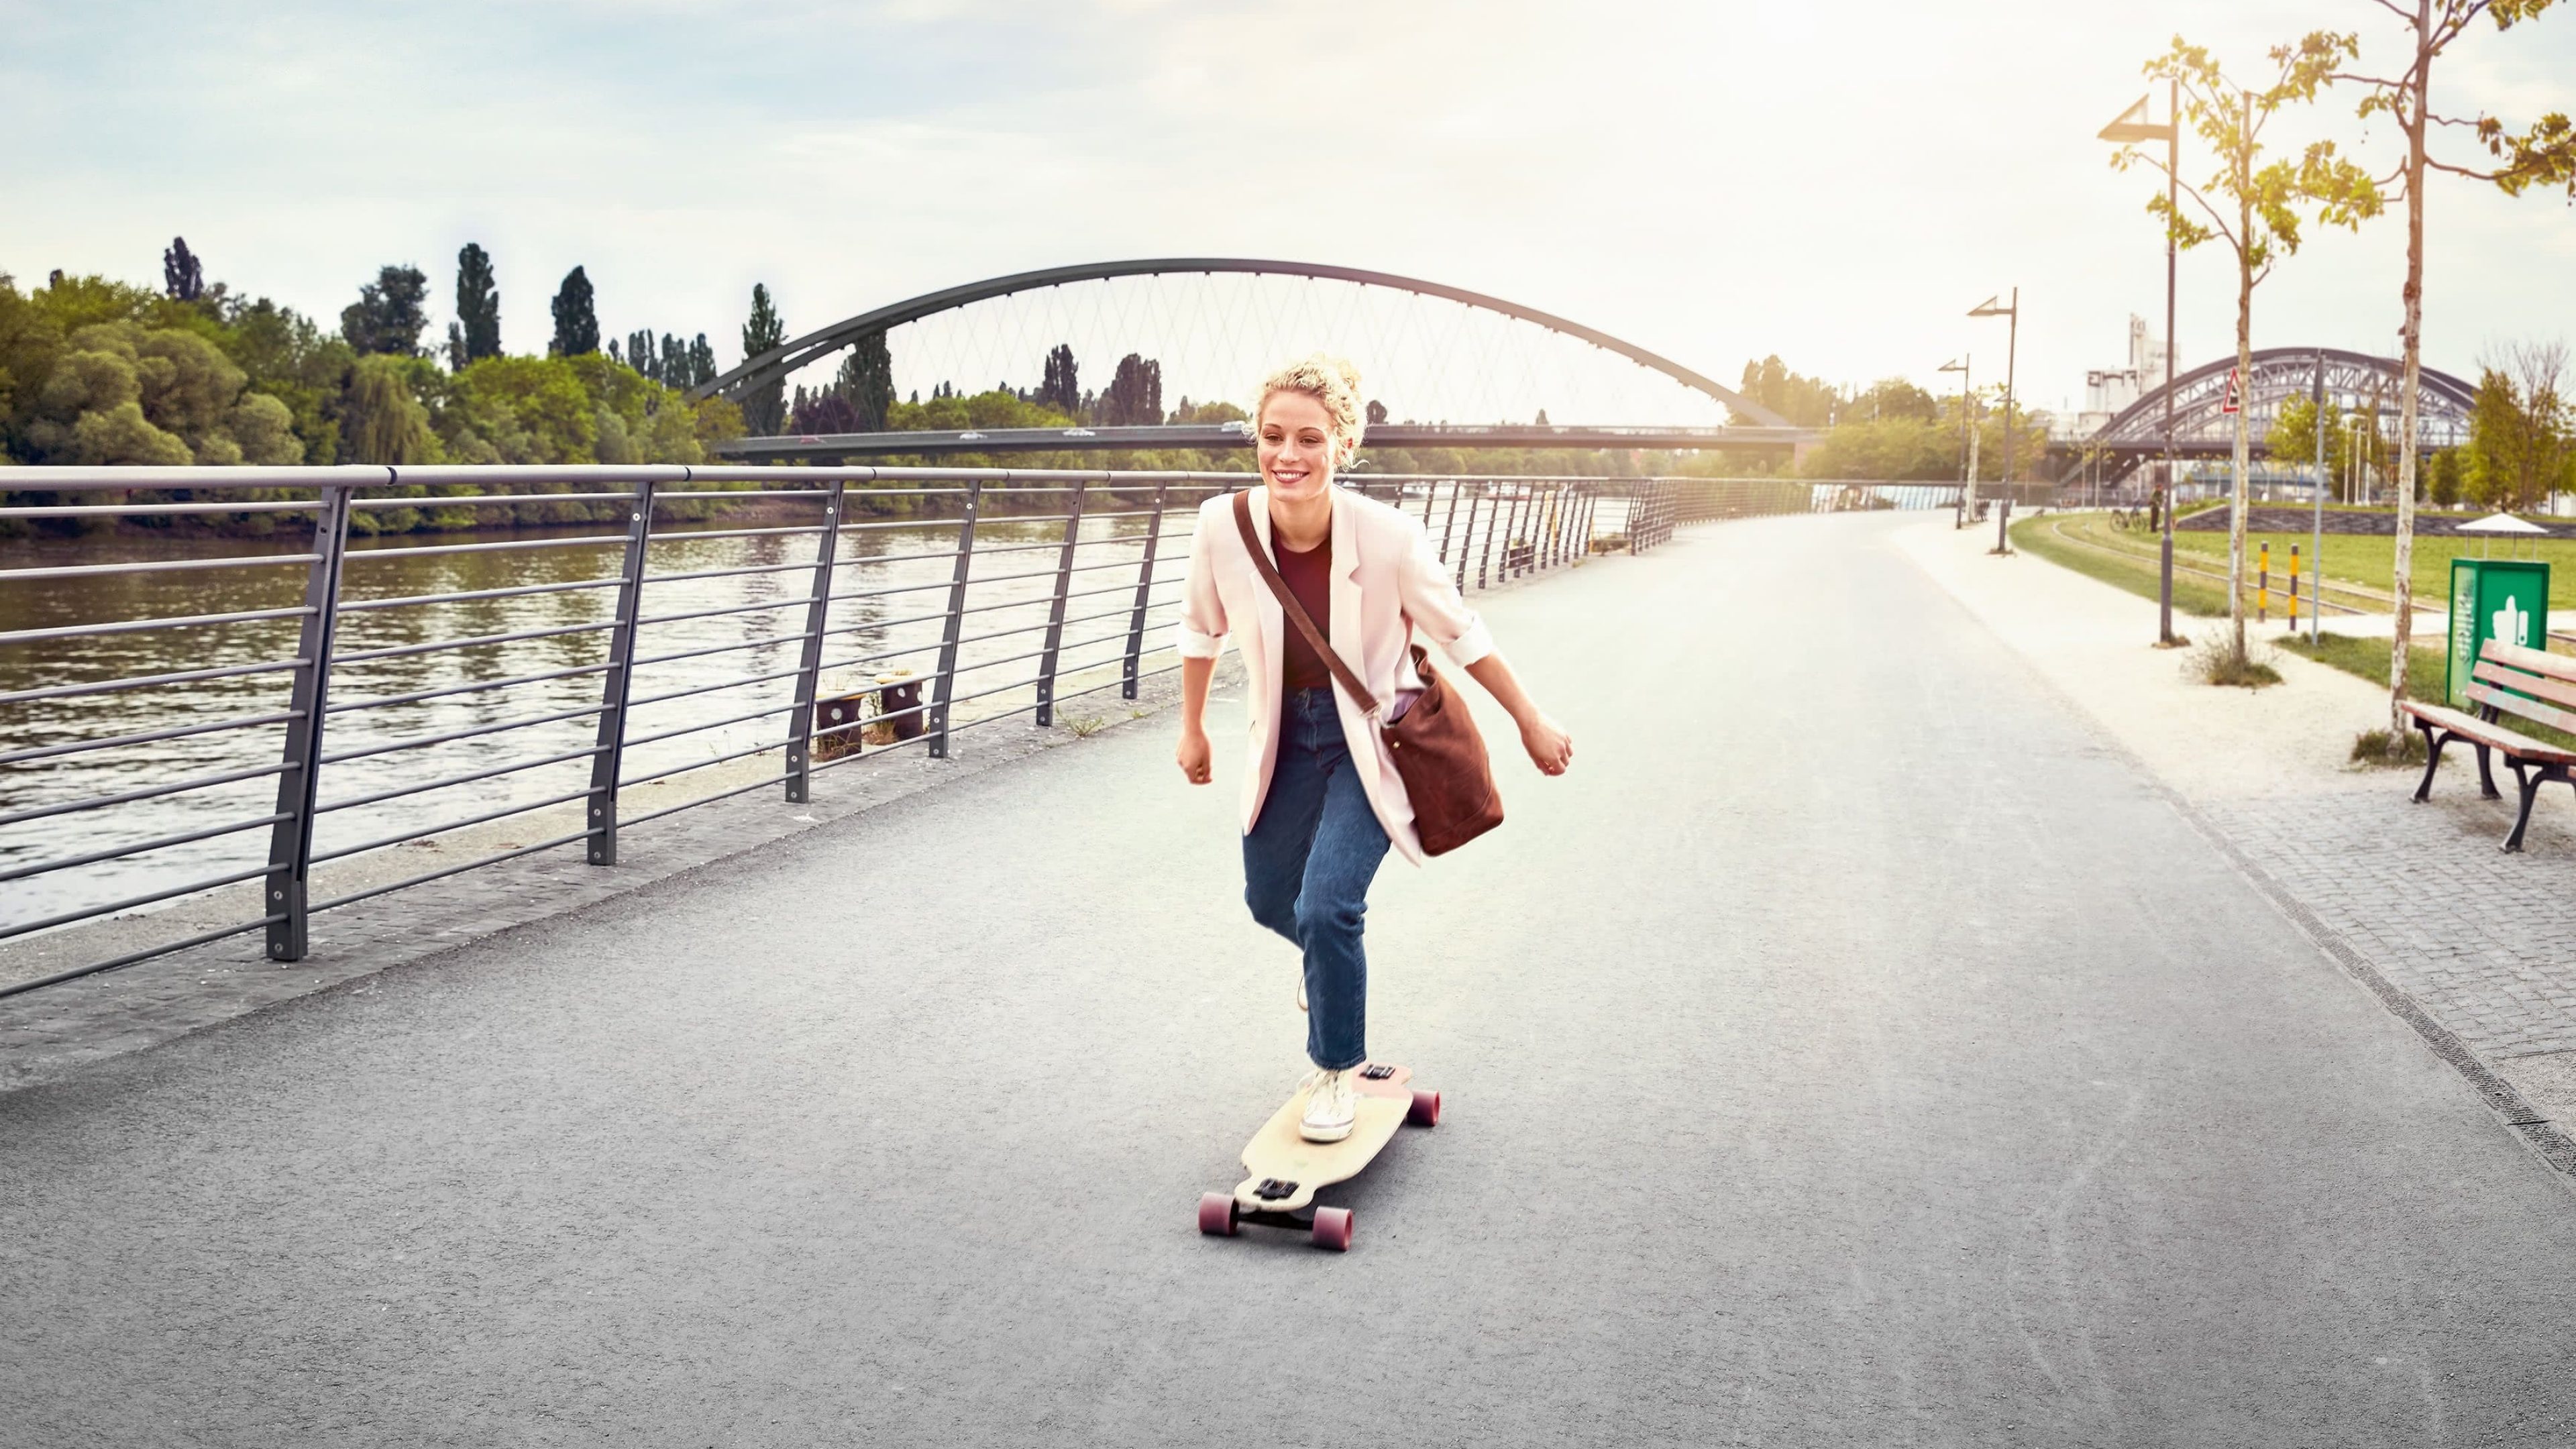 Junge Frau fährt am Fluss Skateboard